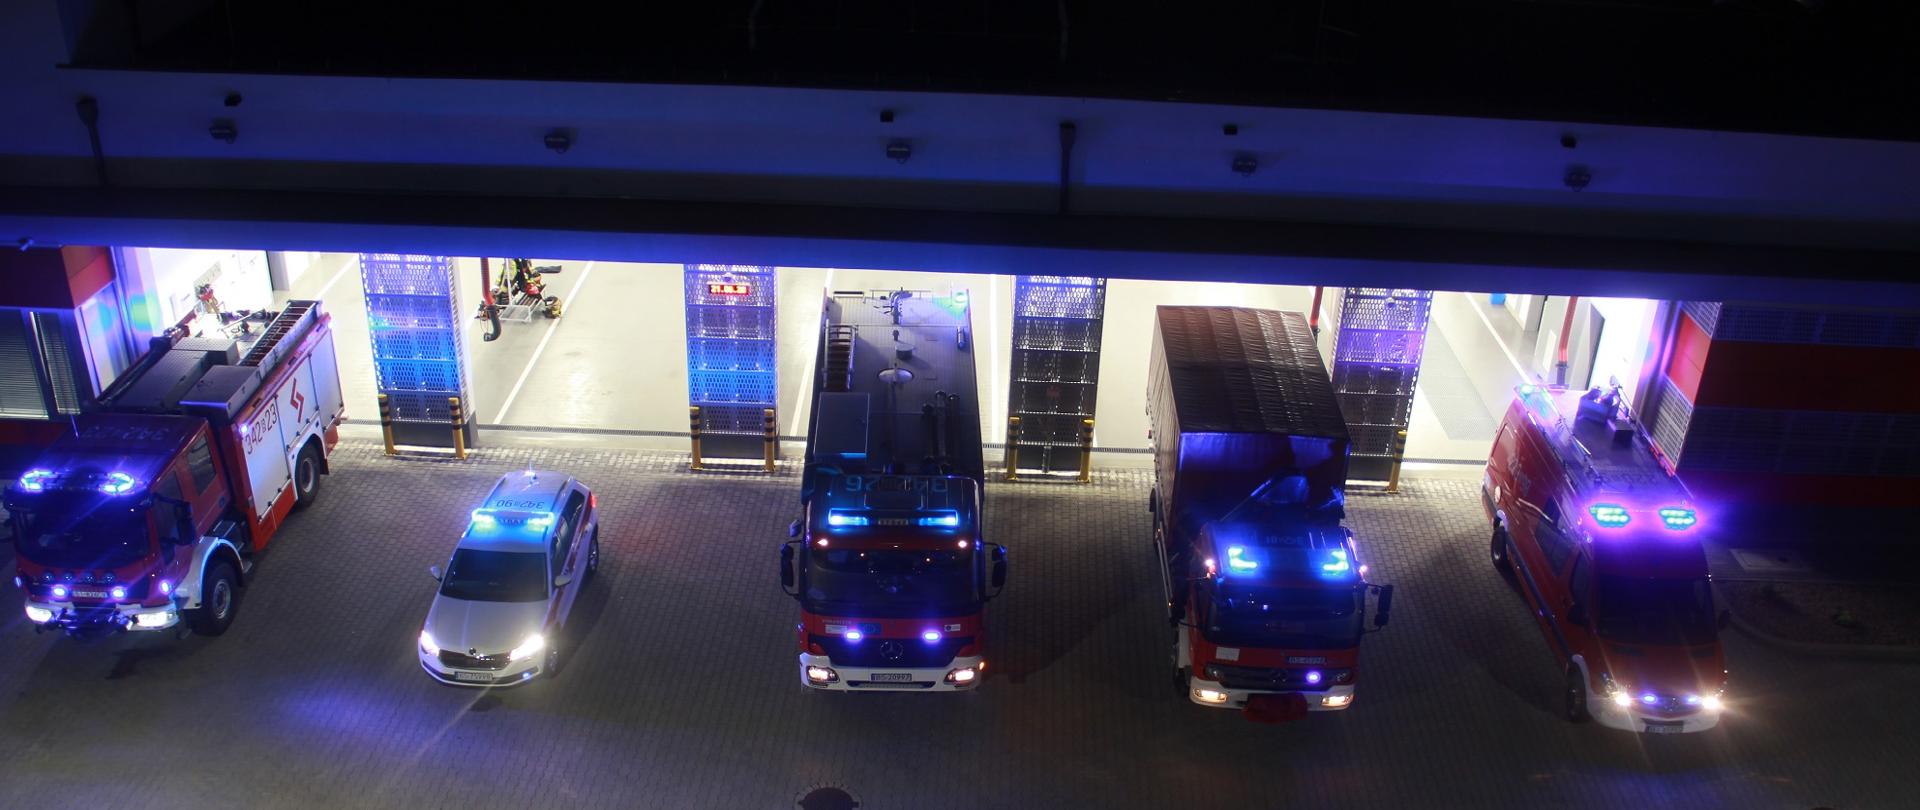 Na zdjęciu widać w nocy przed bramami garaży 5 samochodów strażackich z włączonymi sygnałami świetlnymi. 